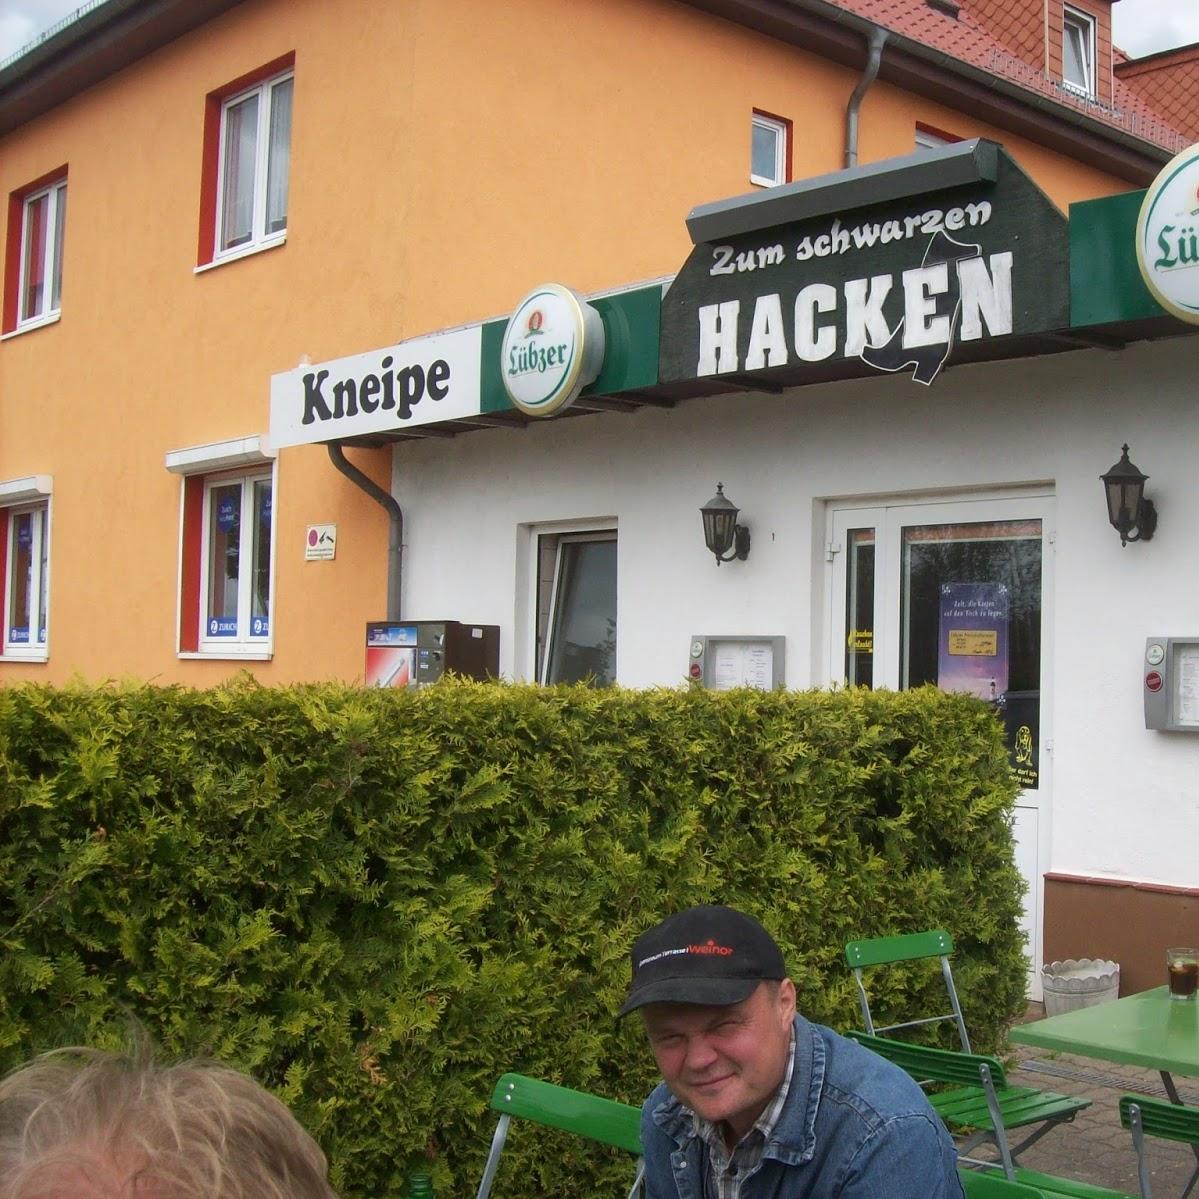 Restaurant "Zum schwarzen Hacken Inh. Maik Wangemann" in  Stralsund